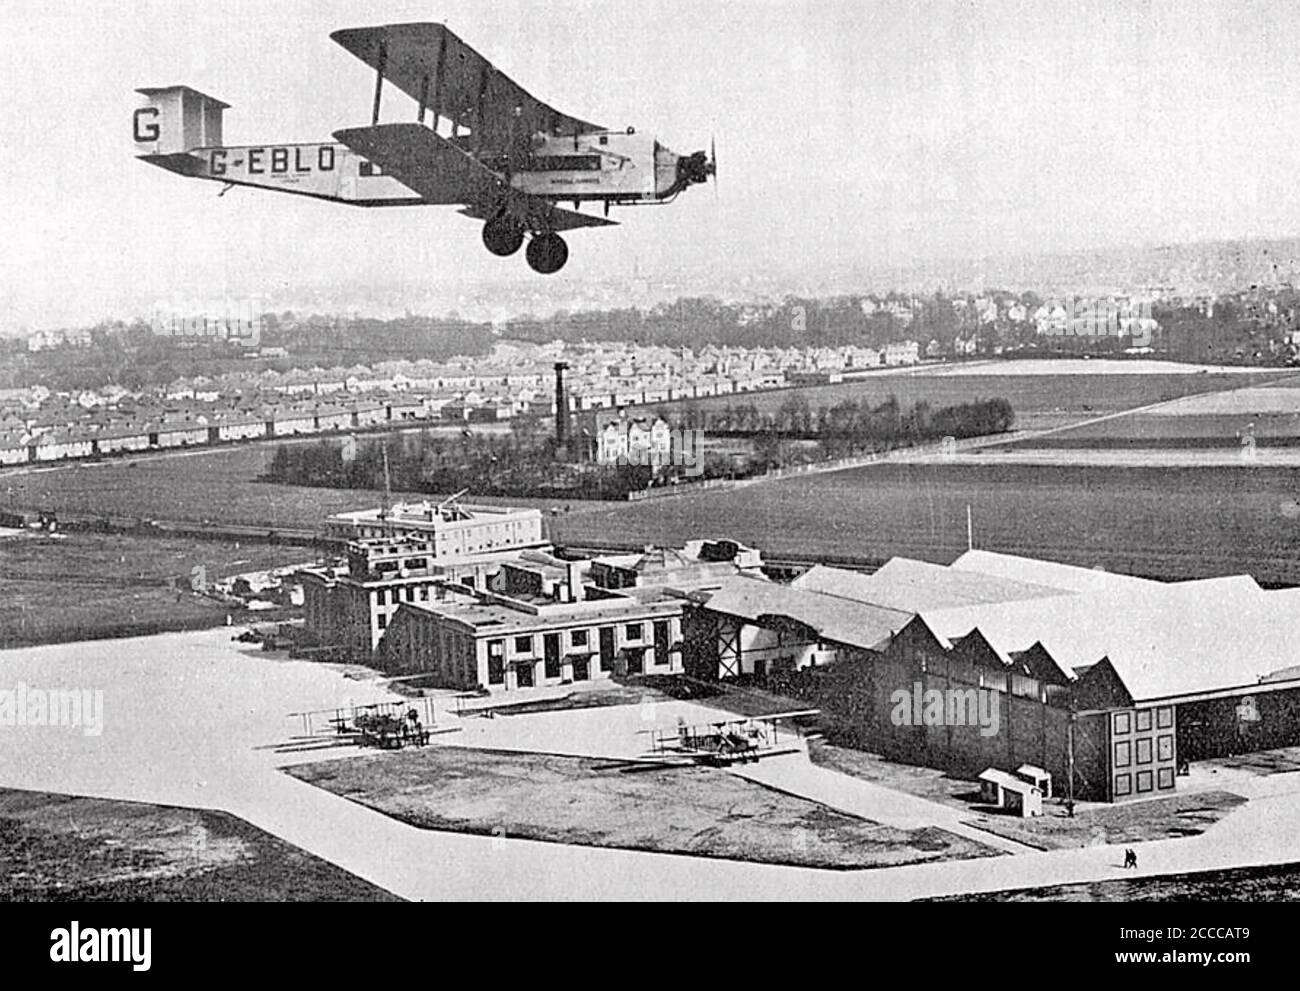 IMPERIAL AIRWAYS Armstrong Whitworth Argosy Aircraft G-EBLO City of Birmingham über dem Flughafen Croydon im Jahr 1926 das Jahr, in dem es in Dienst bei der Fluggesellschaft.Es ist Flugtage endete mit einem Absturz im Jahr 1948. Stockfoto